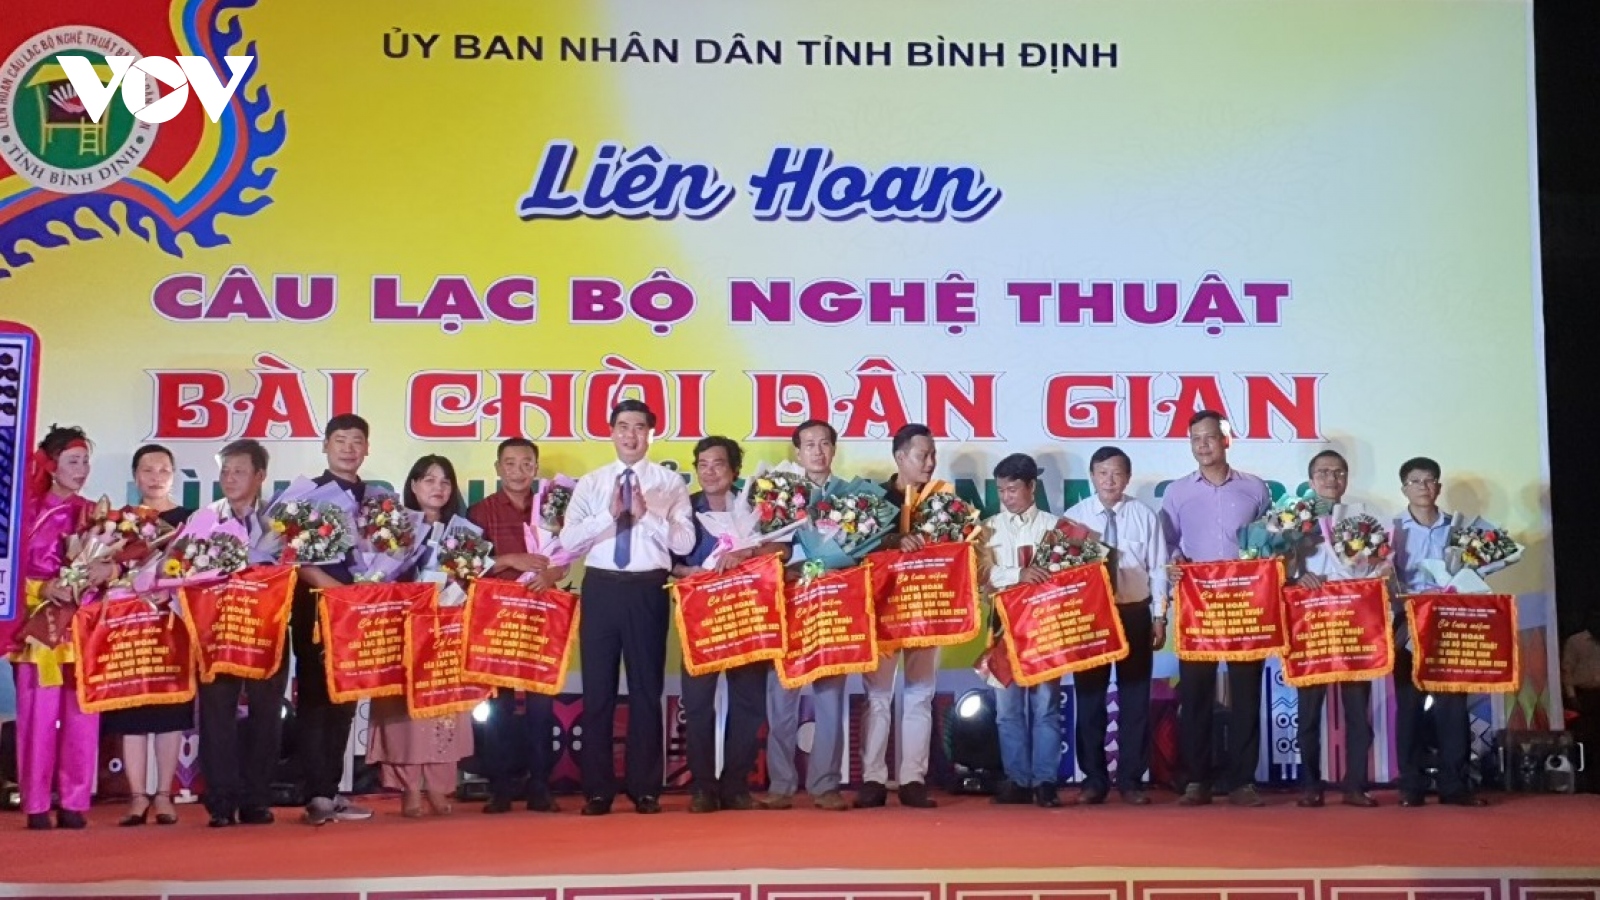 Sôi động Liên hoan CLB nghệ thuật bài chòi dân gian tại Bình Định